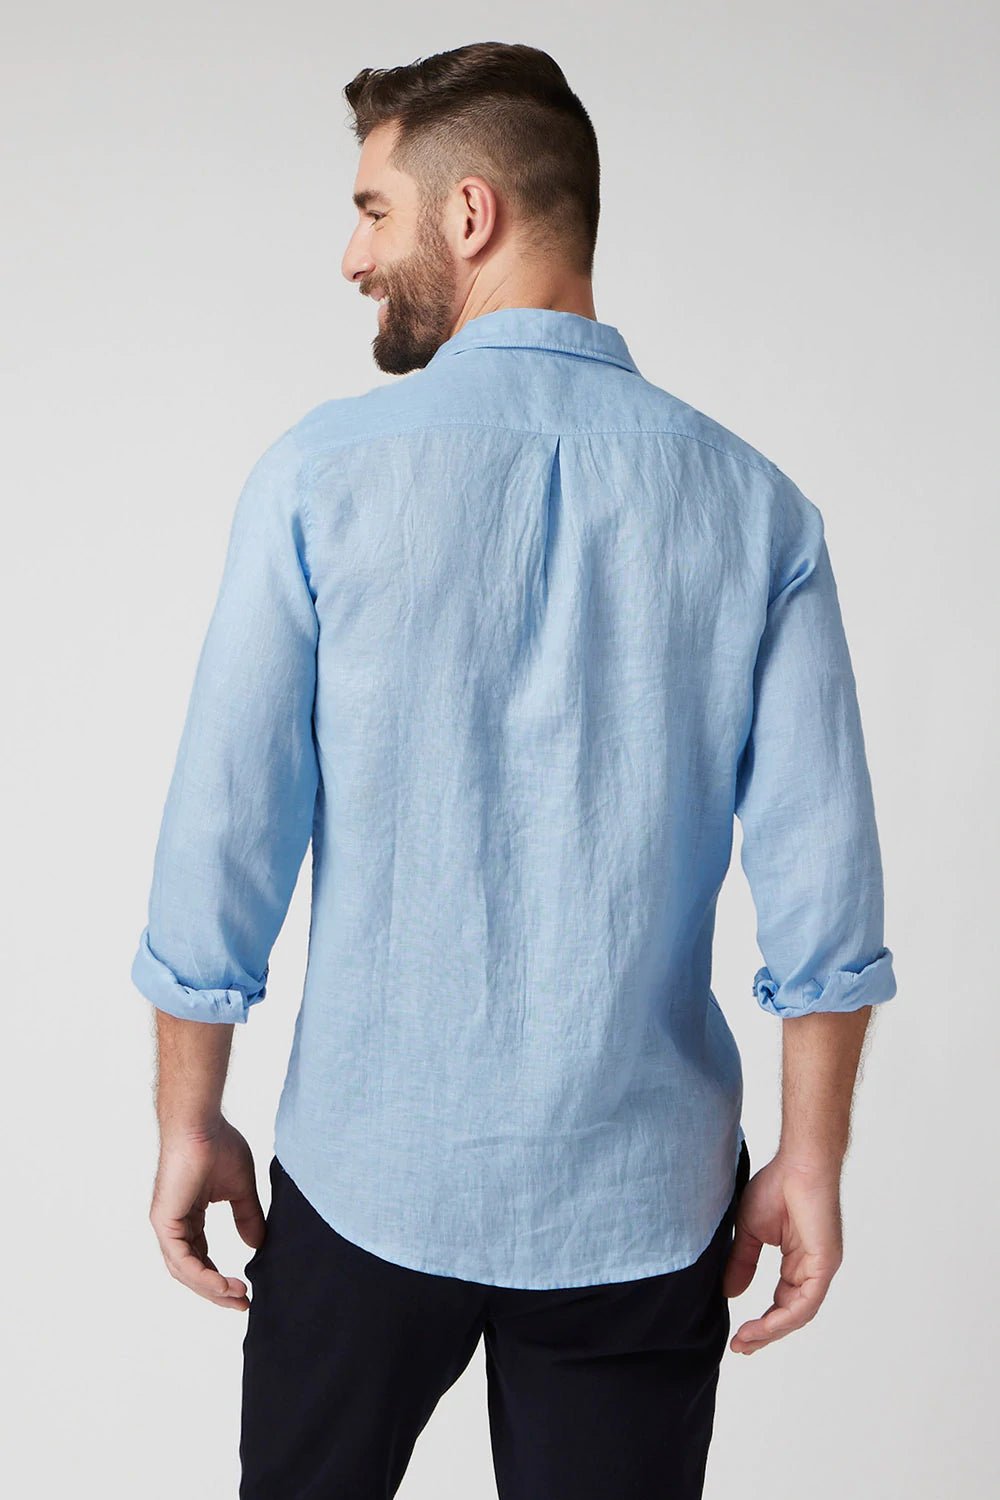 Raffi Pure Linen Button Front Shirt - My Filosophy